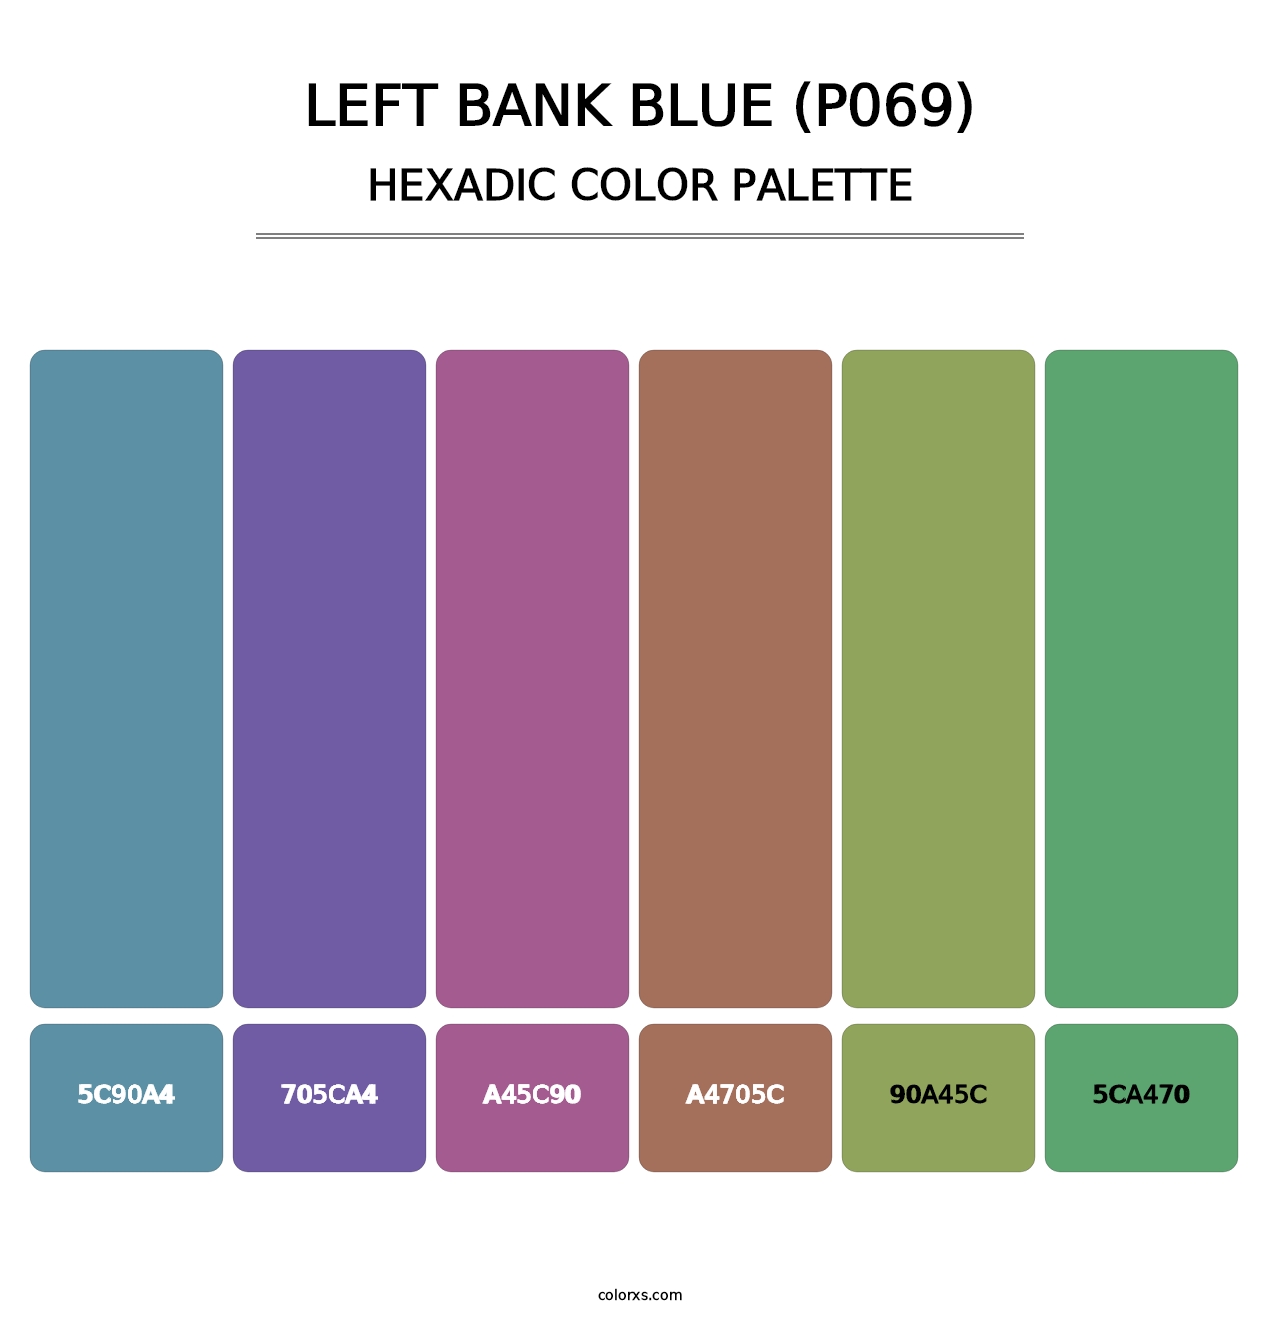 Left Bank Blue (P069) - Hexadic Color Palette